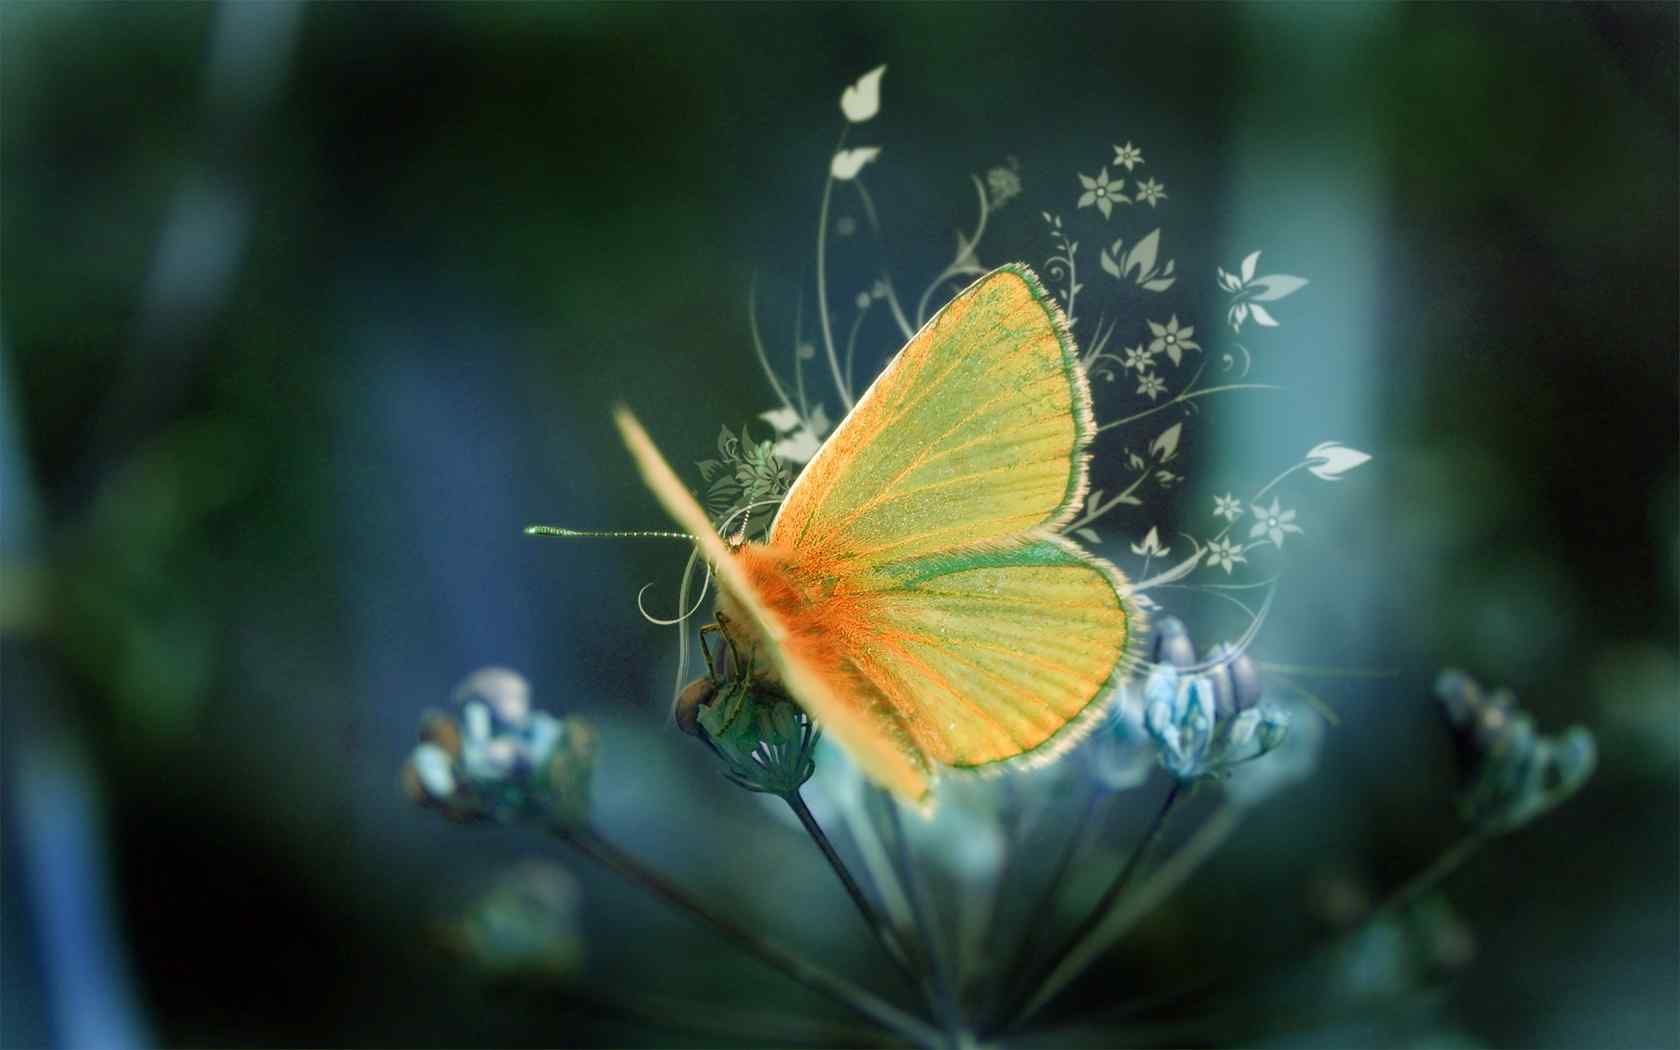 漂亮蝴蝶精美摄影壁纸